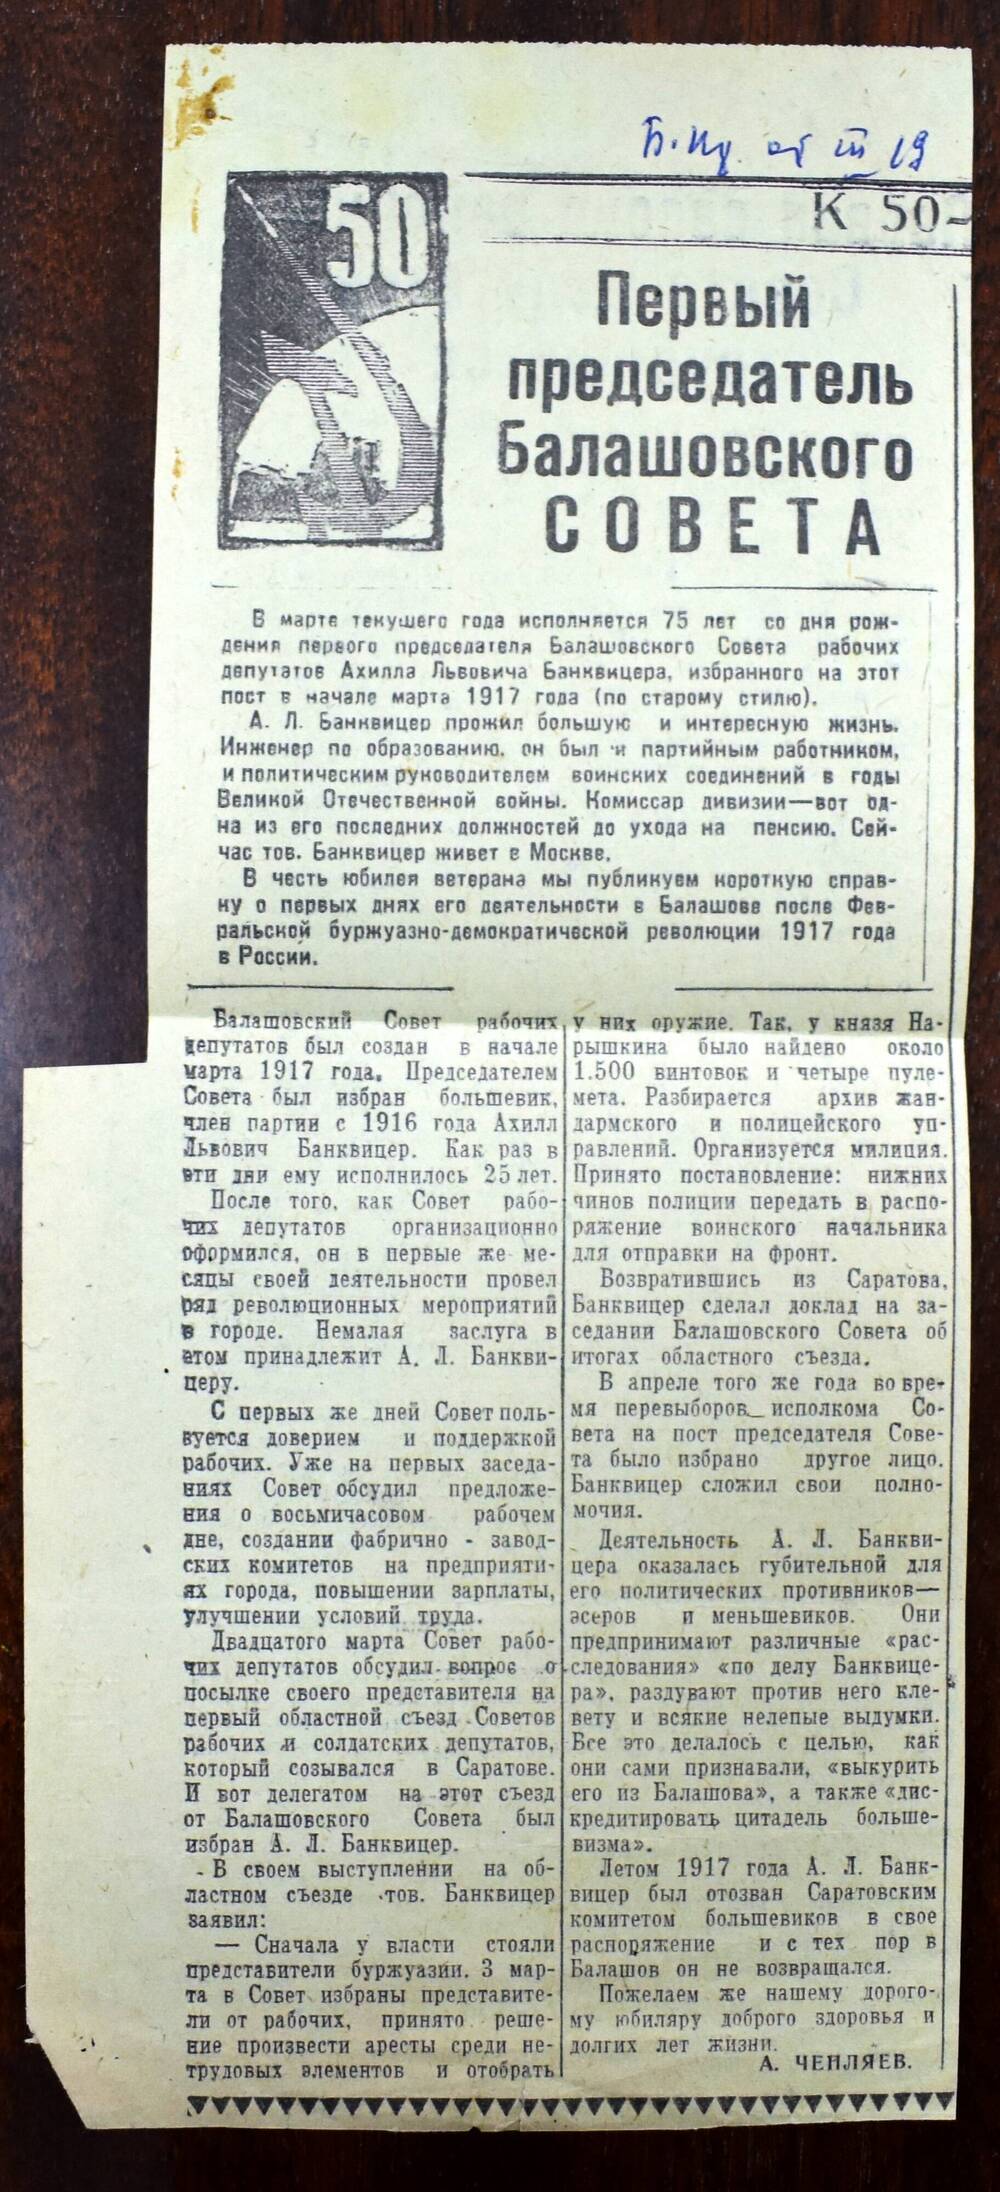 Фрагмент газеты  
«Балашовская правда»
от 19 марта 1967 г.